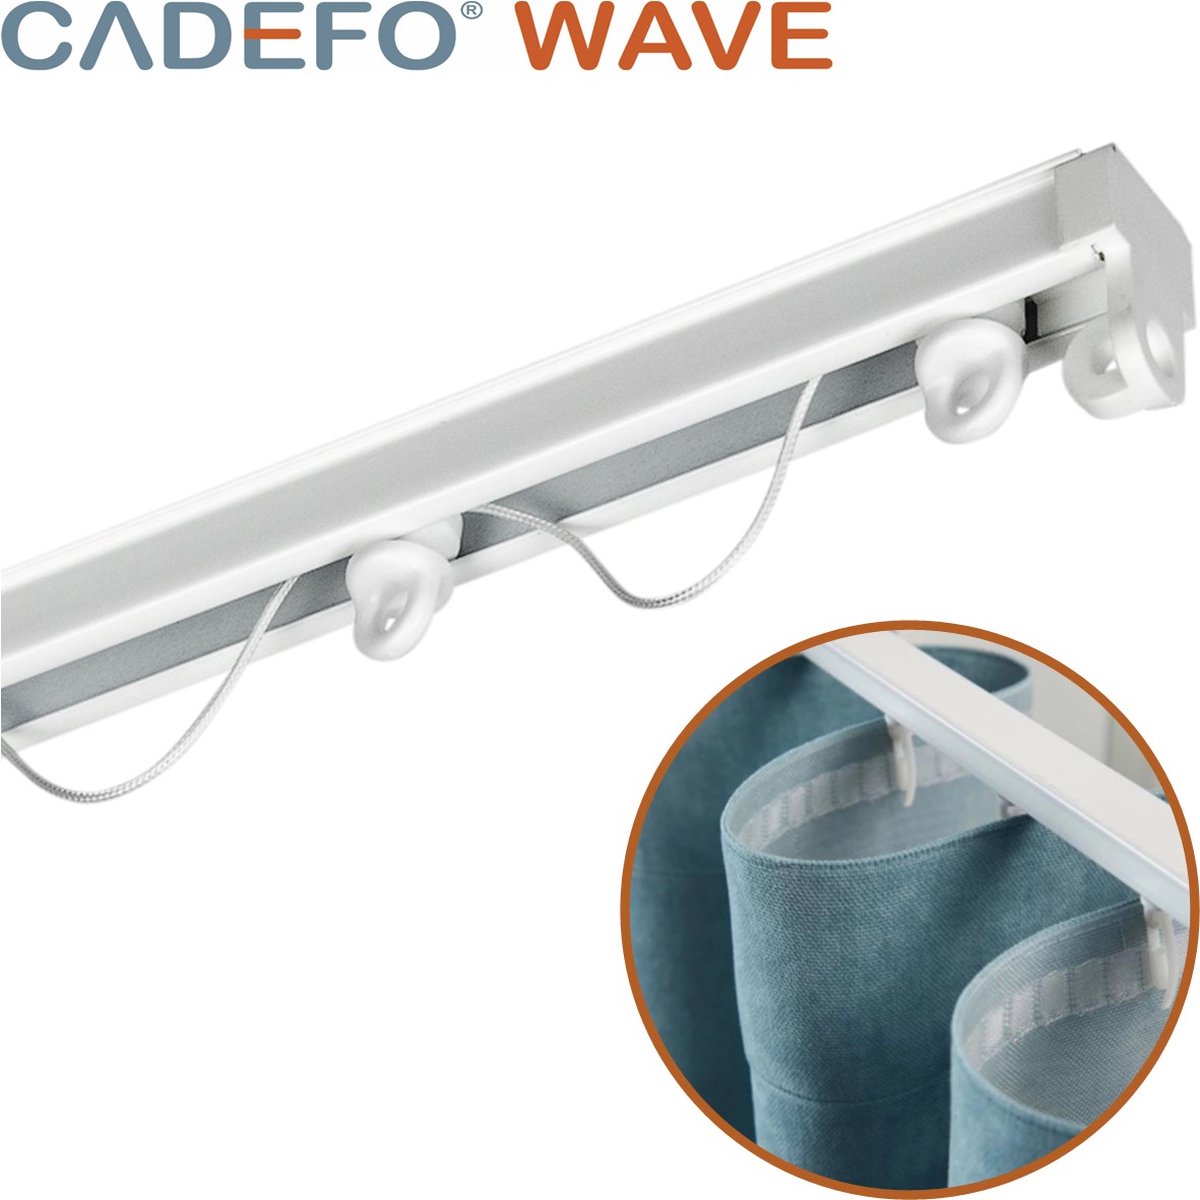 CADEFO WAVE (401 - 450 cm) Gordijnrails - Compleet op maat! - UIT 1 STUK - Leverbaar tot 6 meter - Plafondbevestiging - Lengte 435 cm